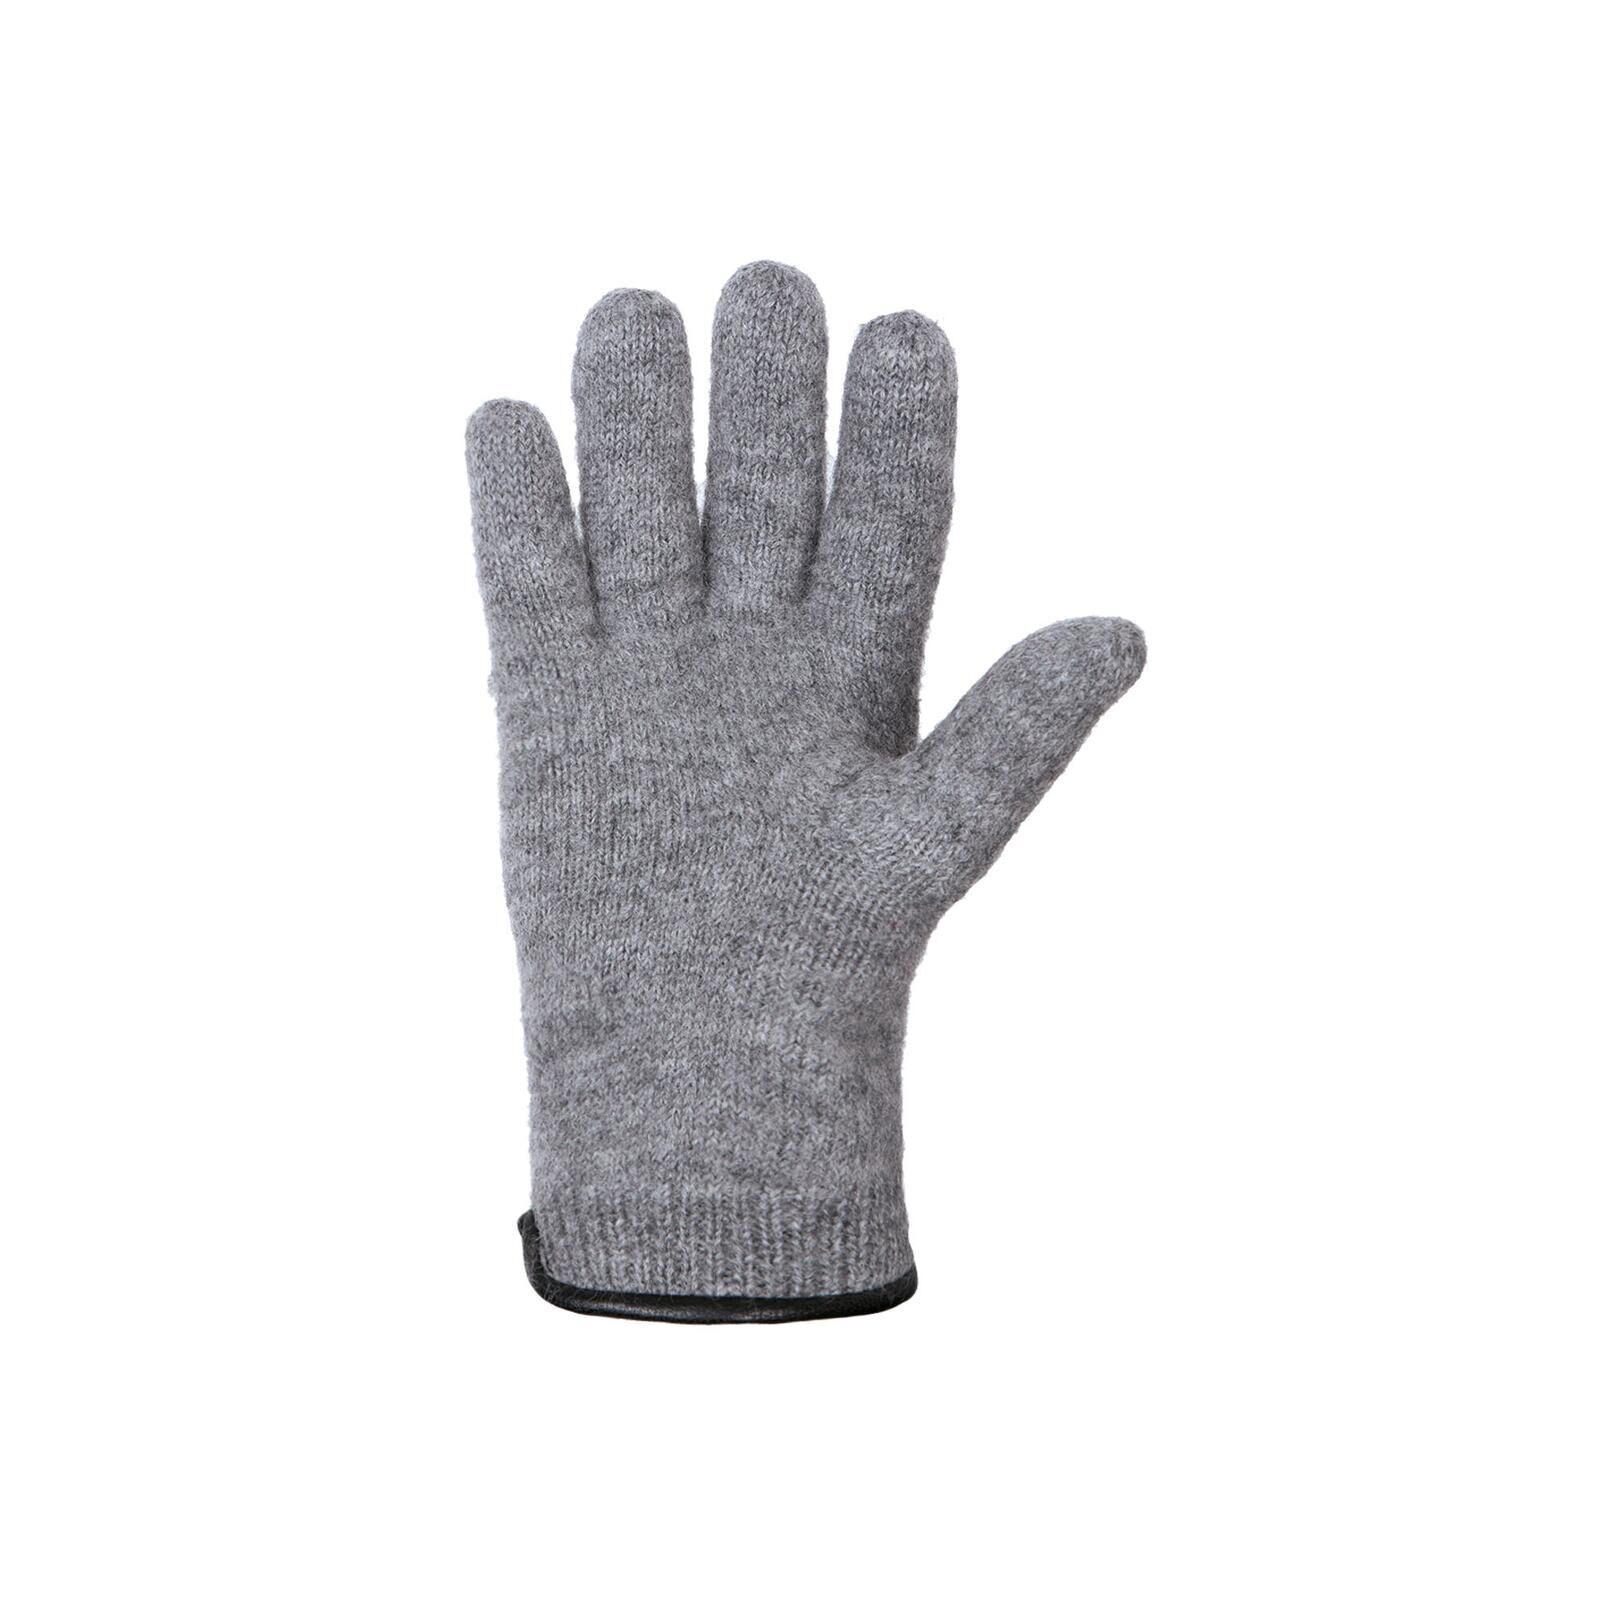 Walk-Handschuhe für Erwachsene von PURE PURE